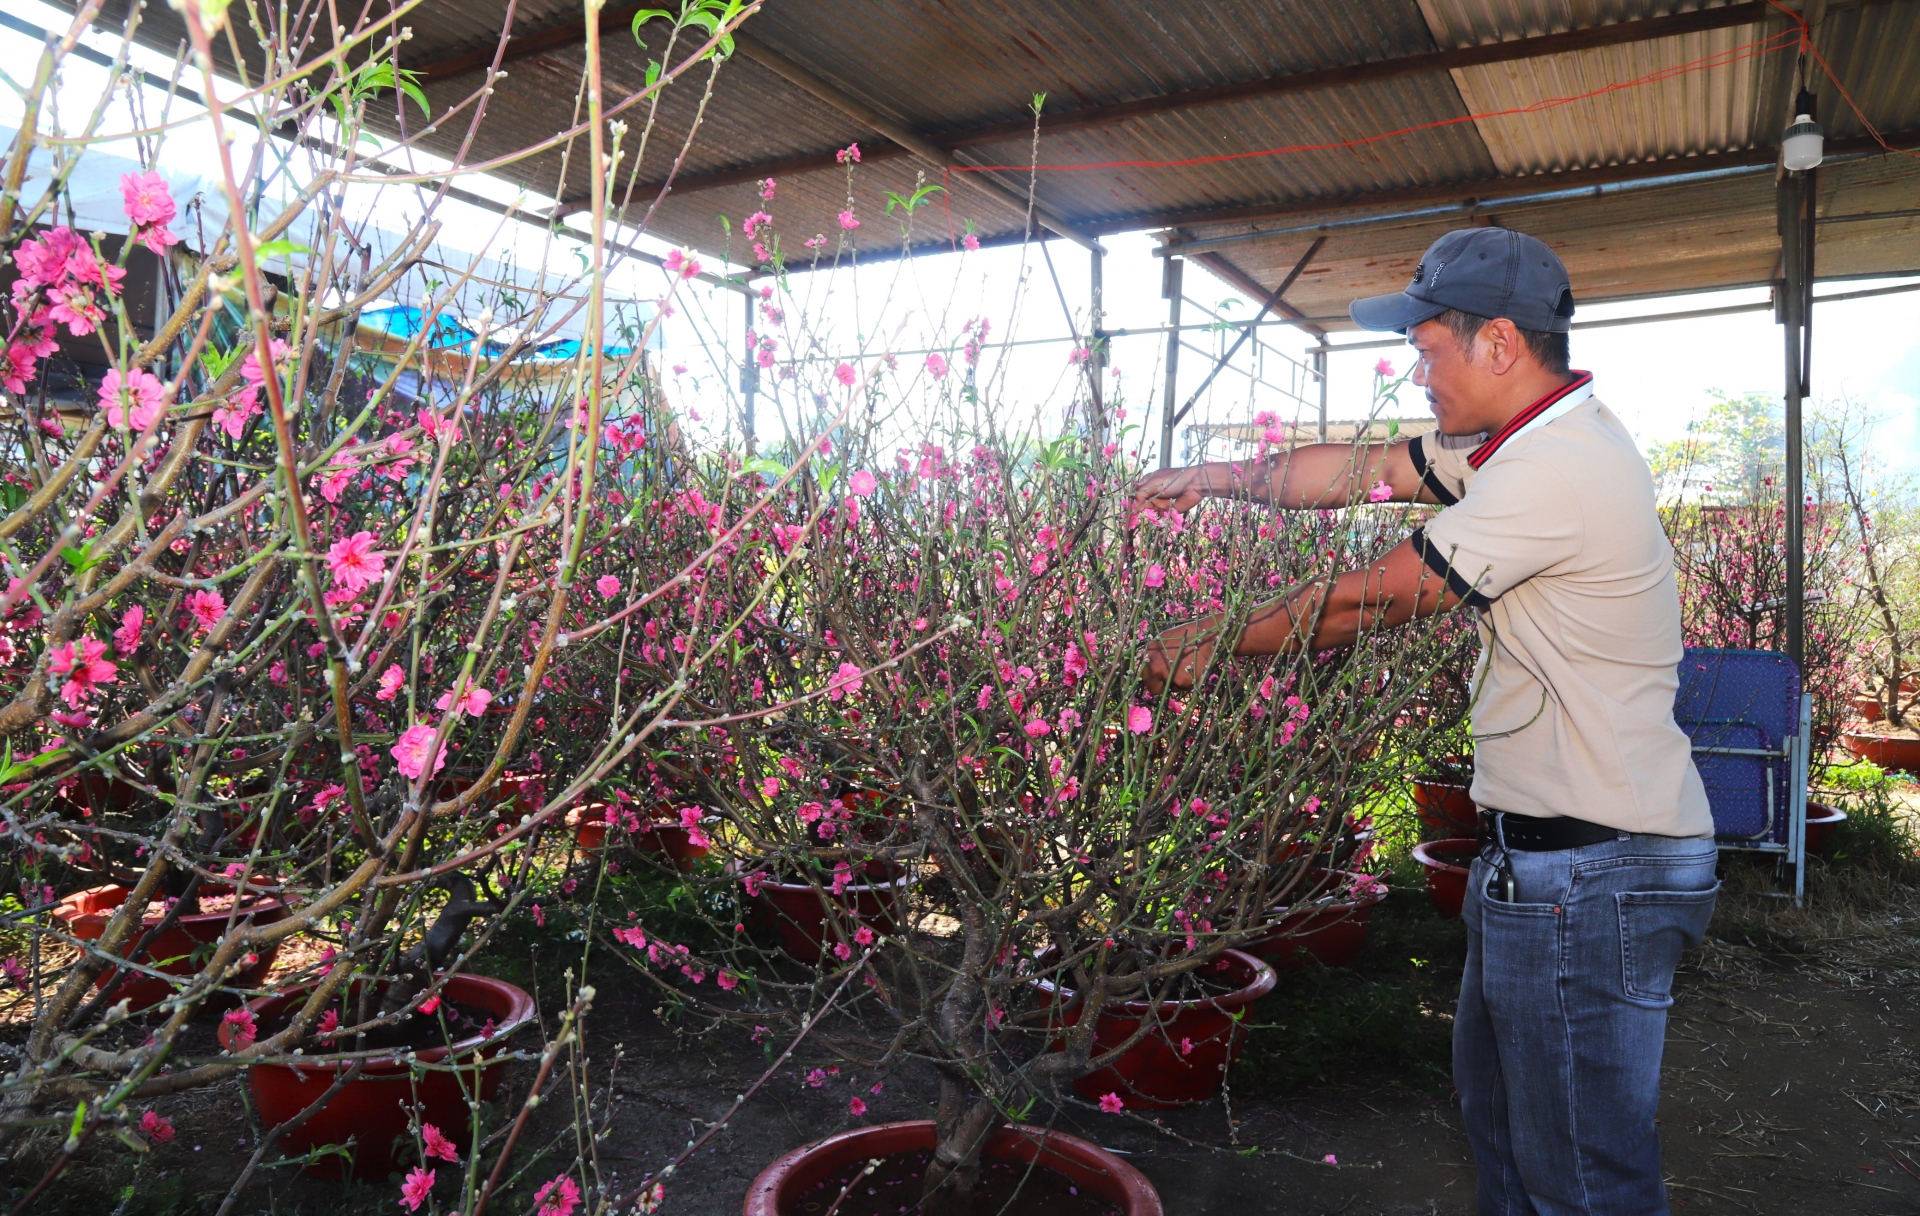 Đào Bắc là một trong những mặt hàng hoa, cây cảnh chưng tết được bày bán nhiều tại các chợ hoa xuân